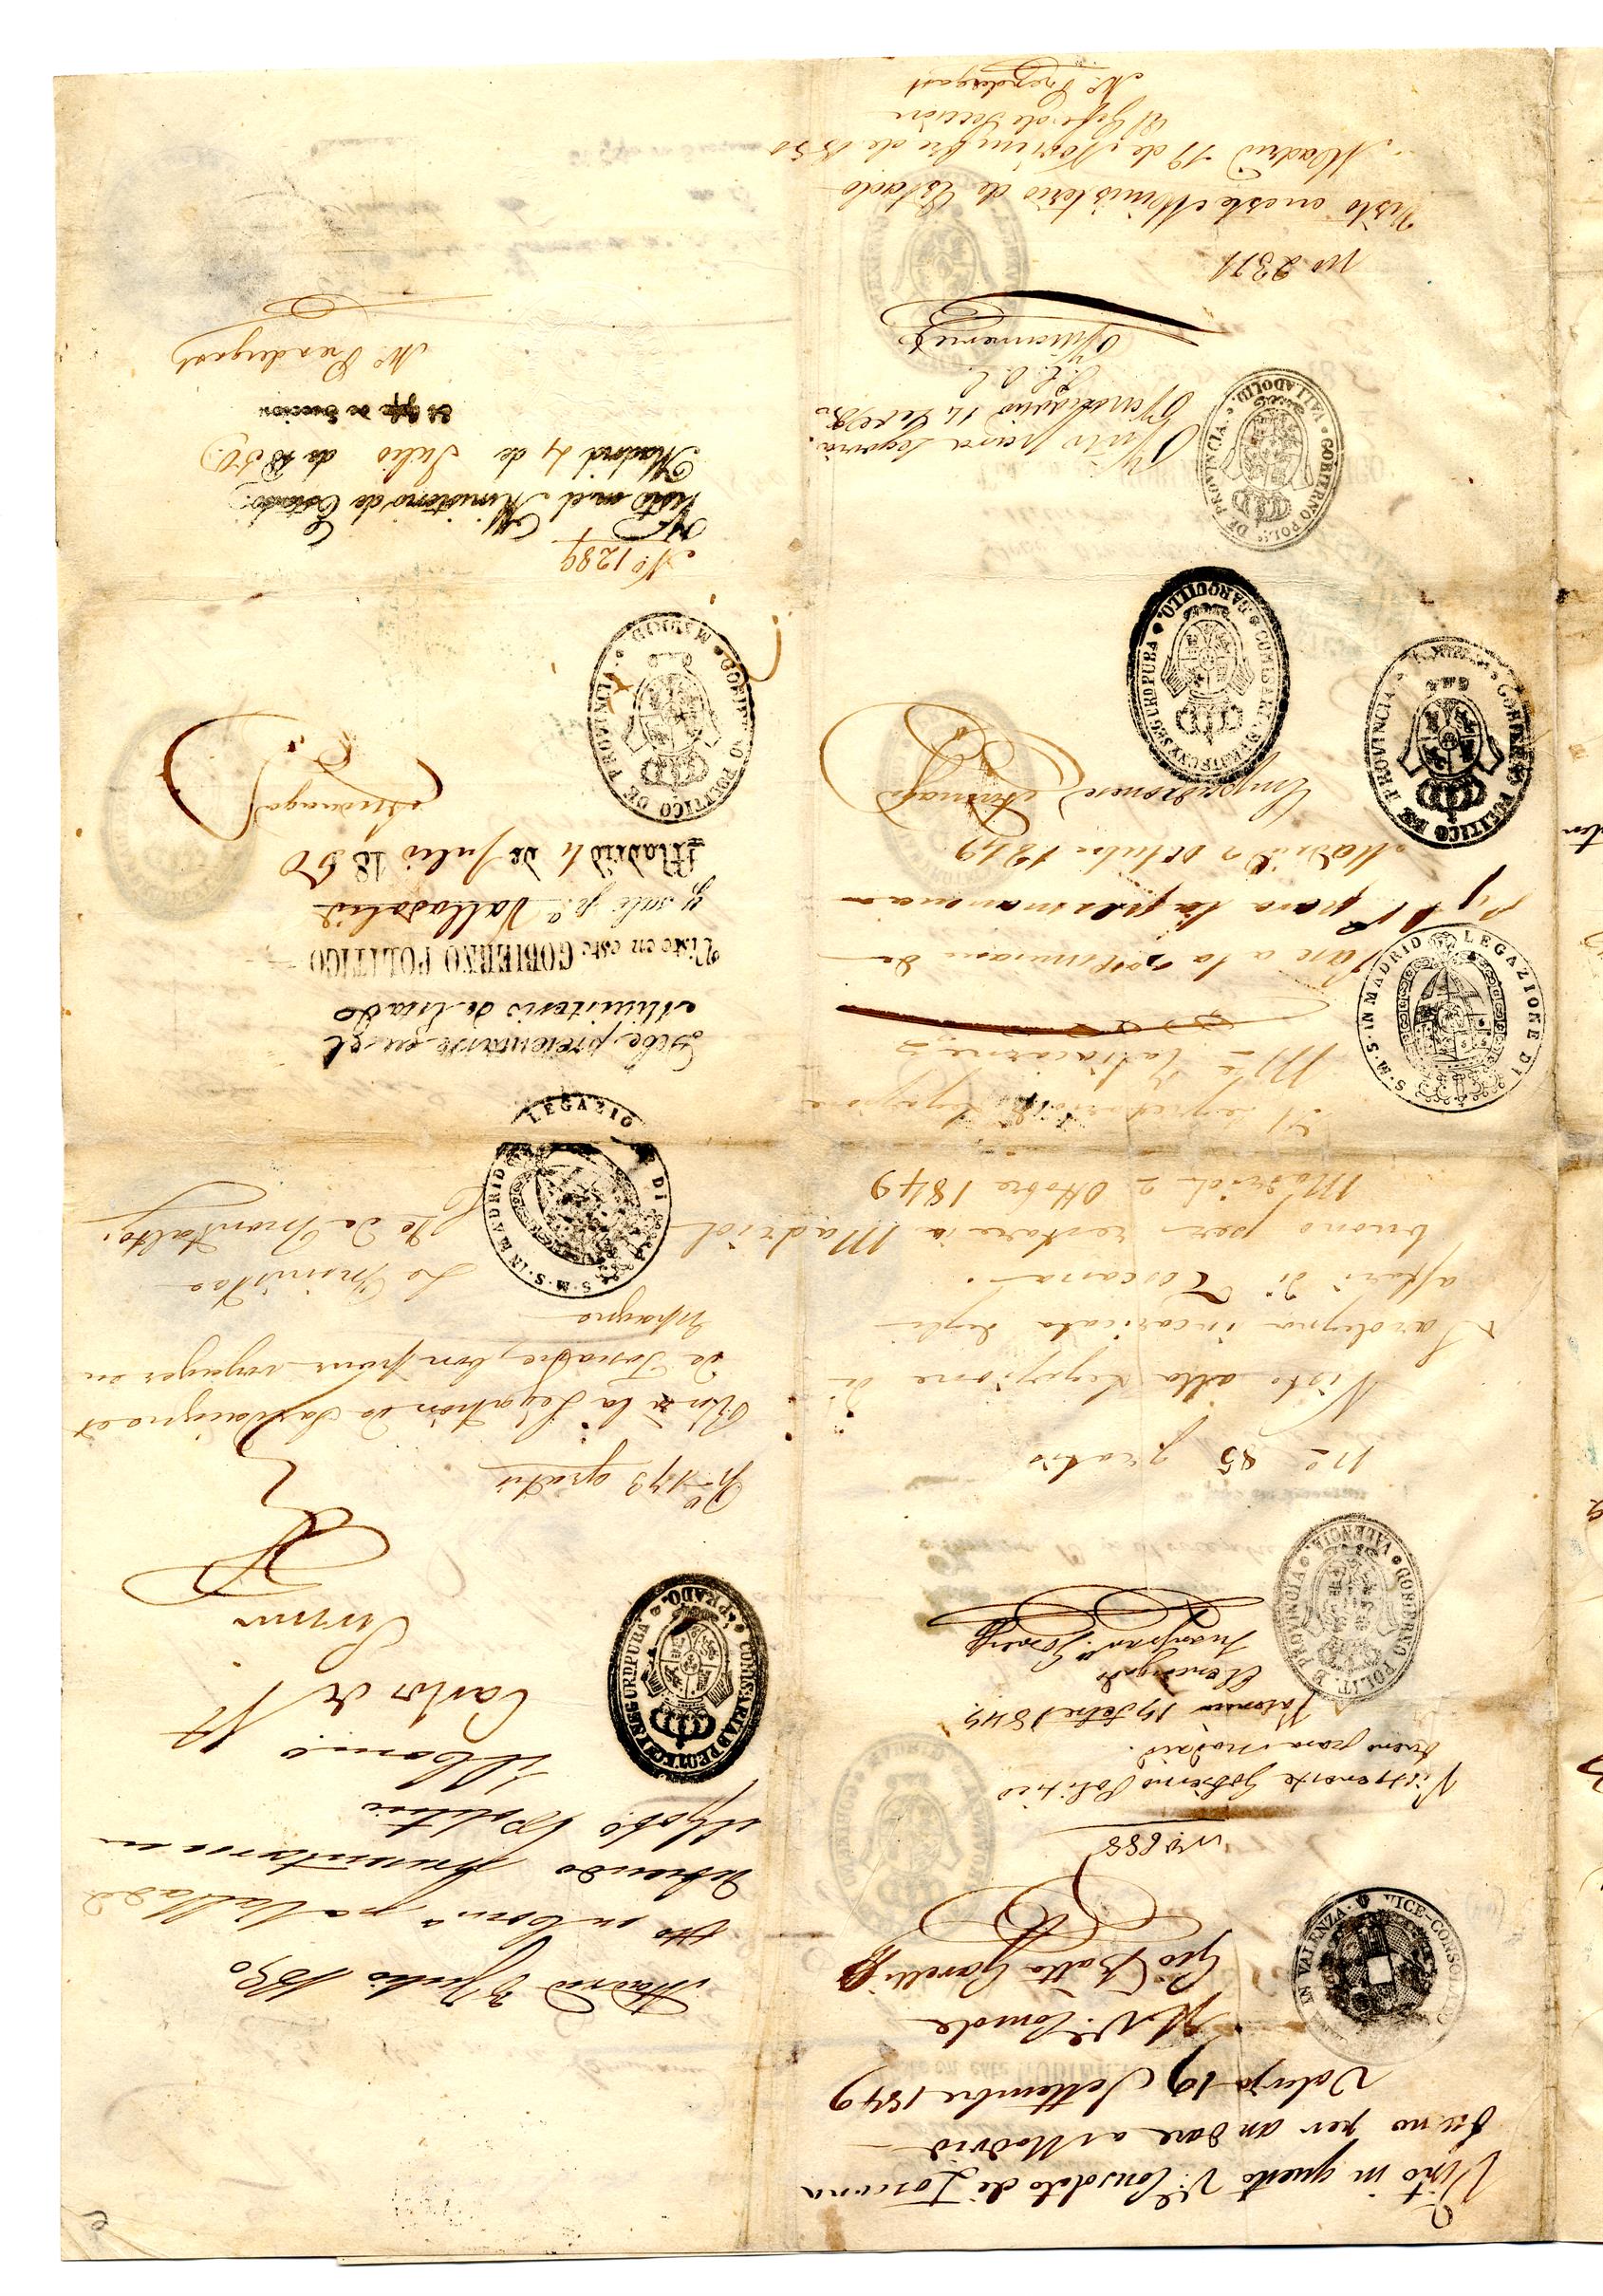 Passaporte de Silvestre Molinari